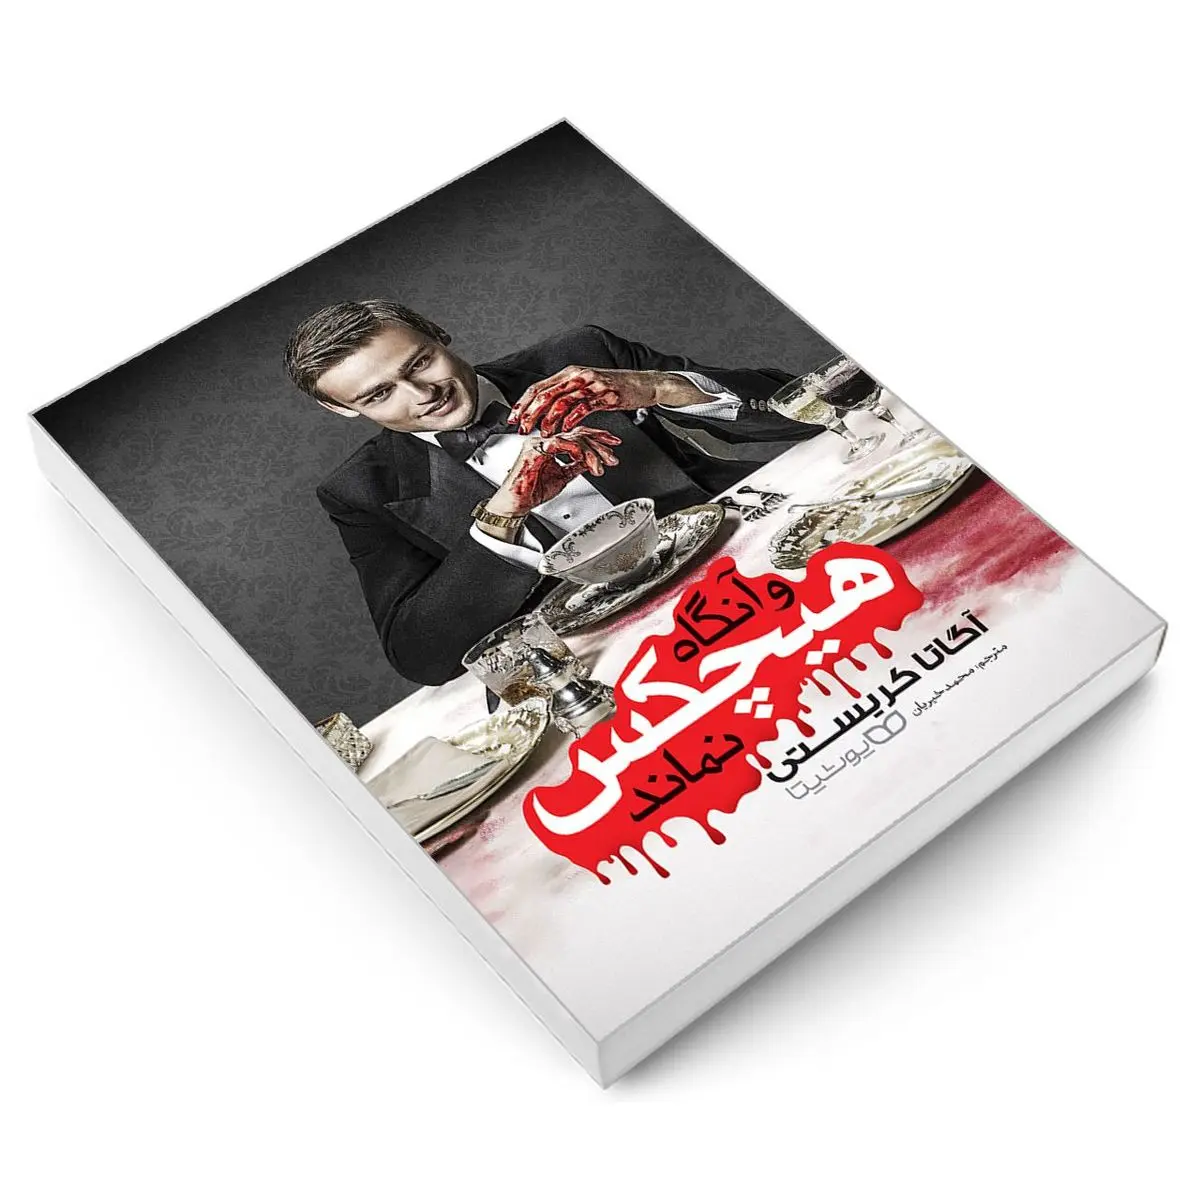 پرفروش ترین رمان پلیسی دنیا از آگاتا کریستی | معرفی کتاب و آنگاه هیچ‌کس نماند